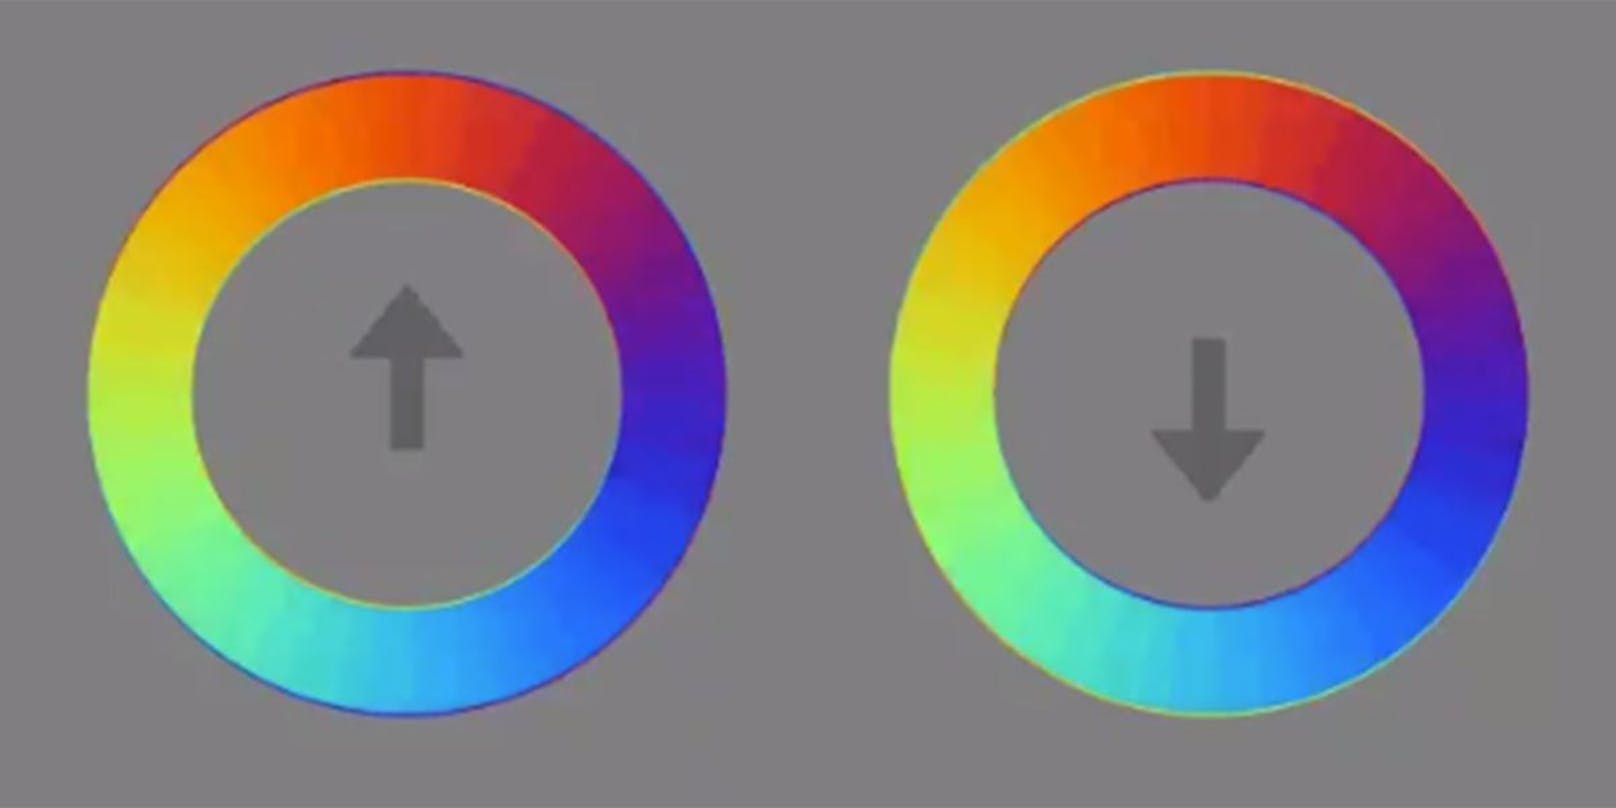 Diese beiden bunten Kreise sorgen für eine optische Täuschung.